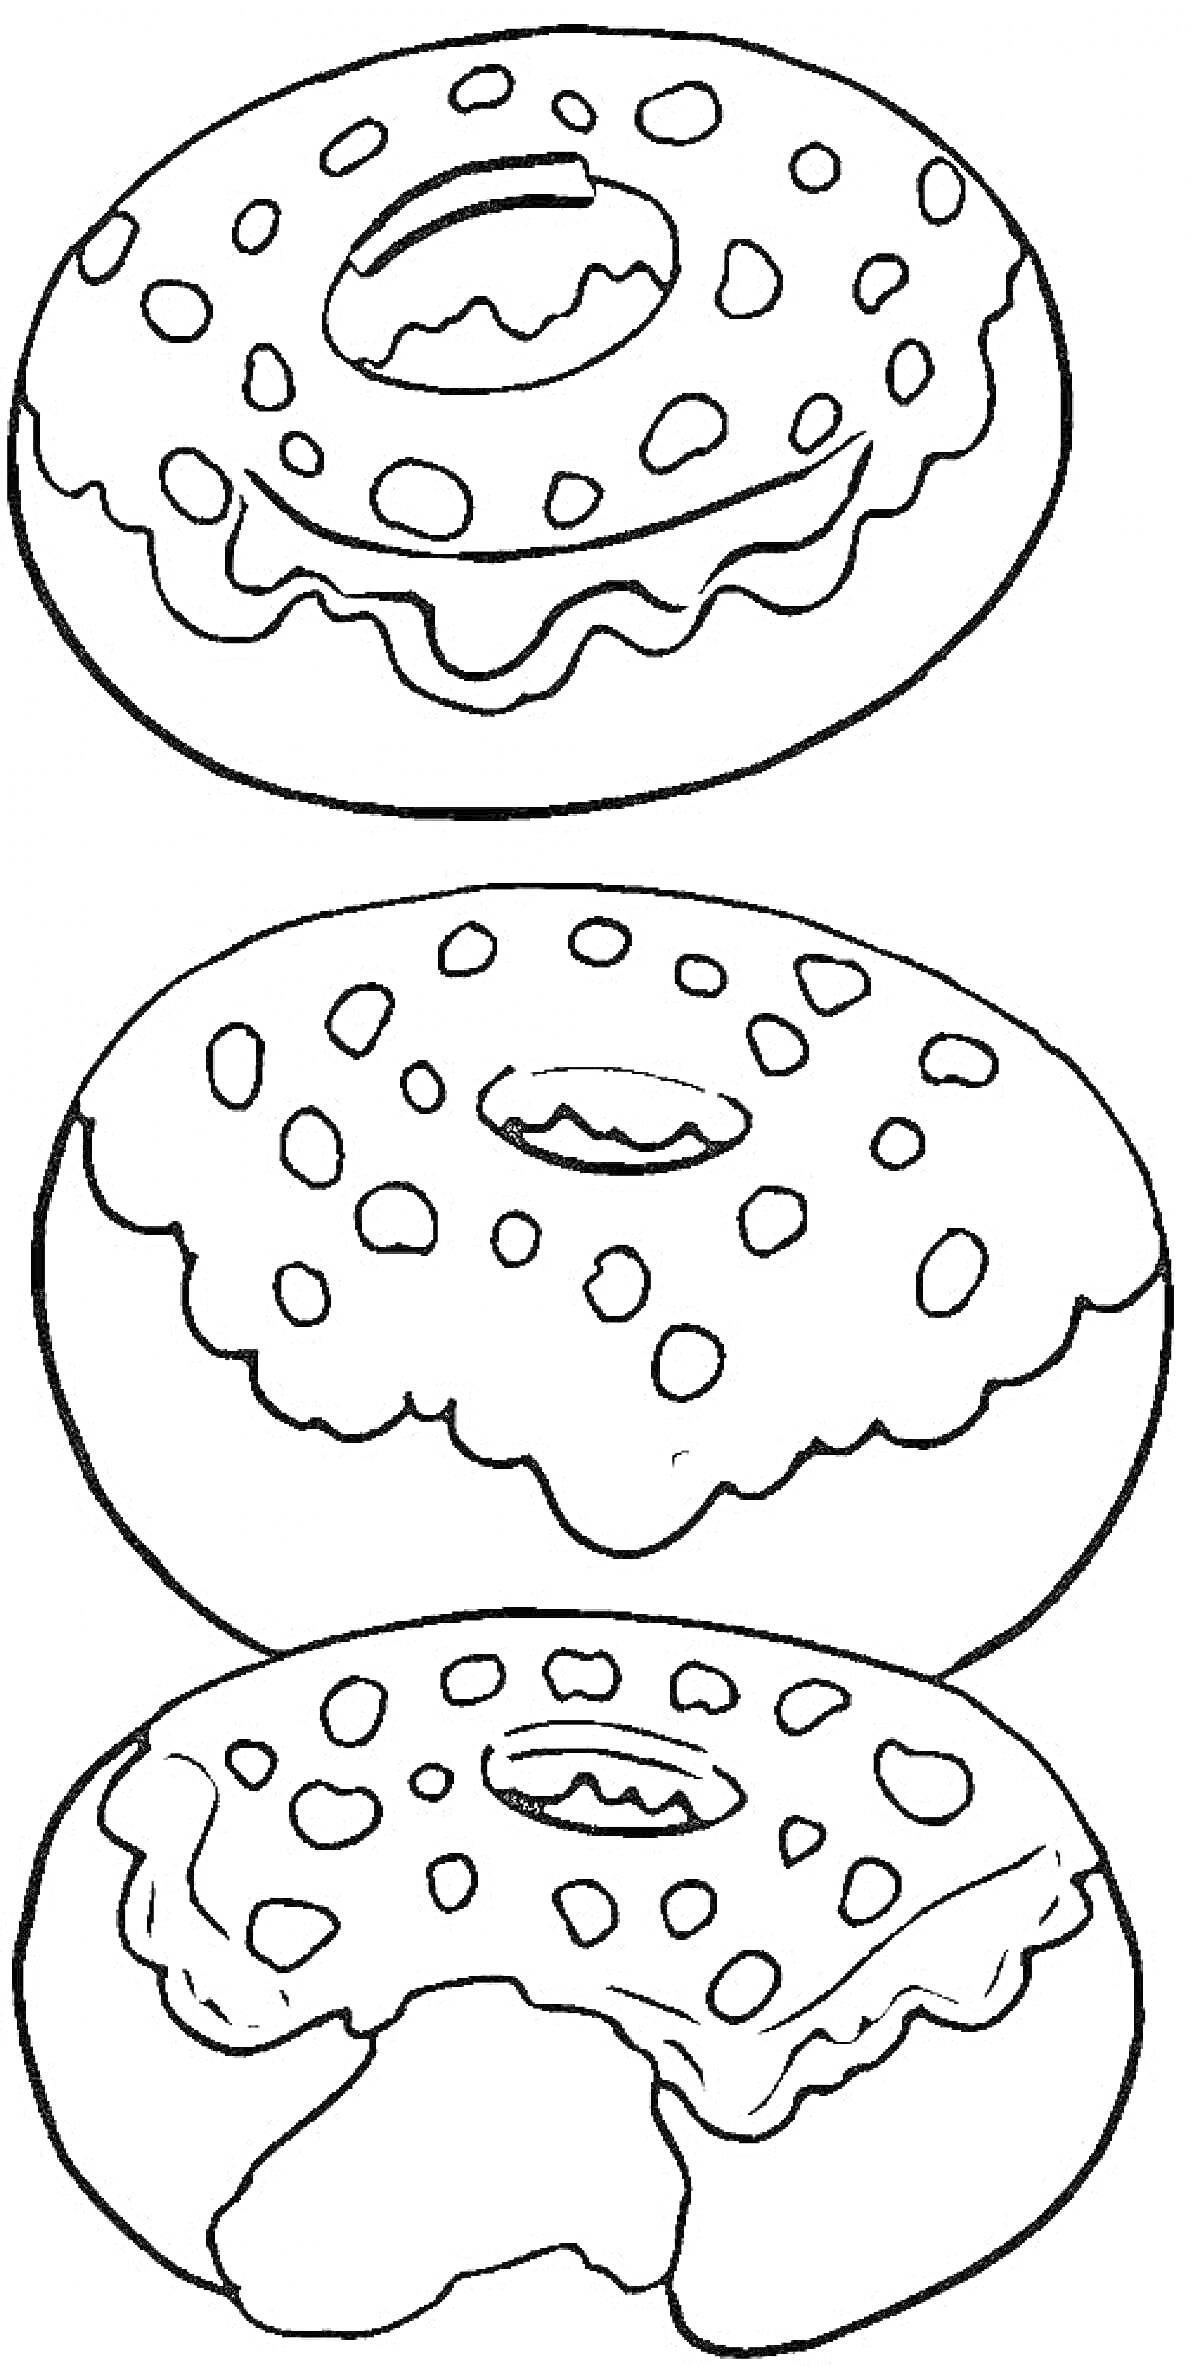 Три пончика с глазурью и посыпкой, один из которых надкушен